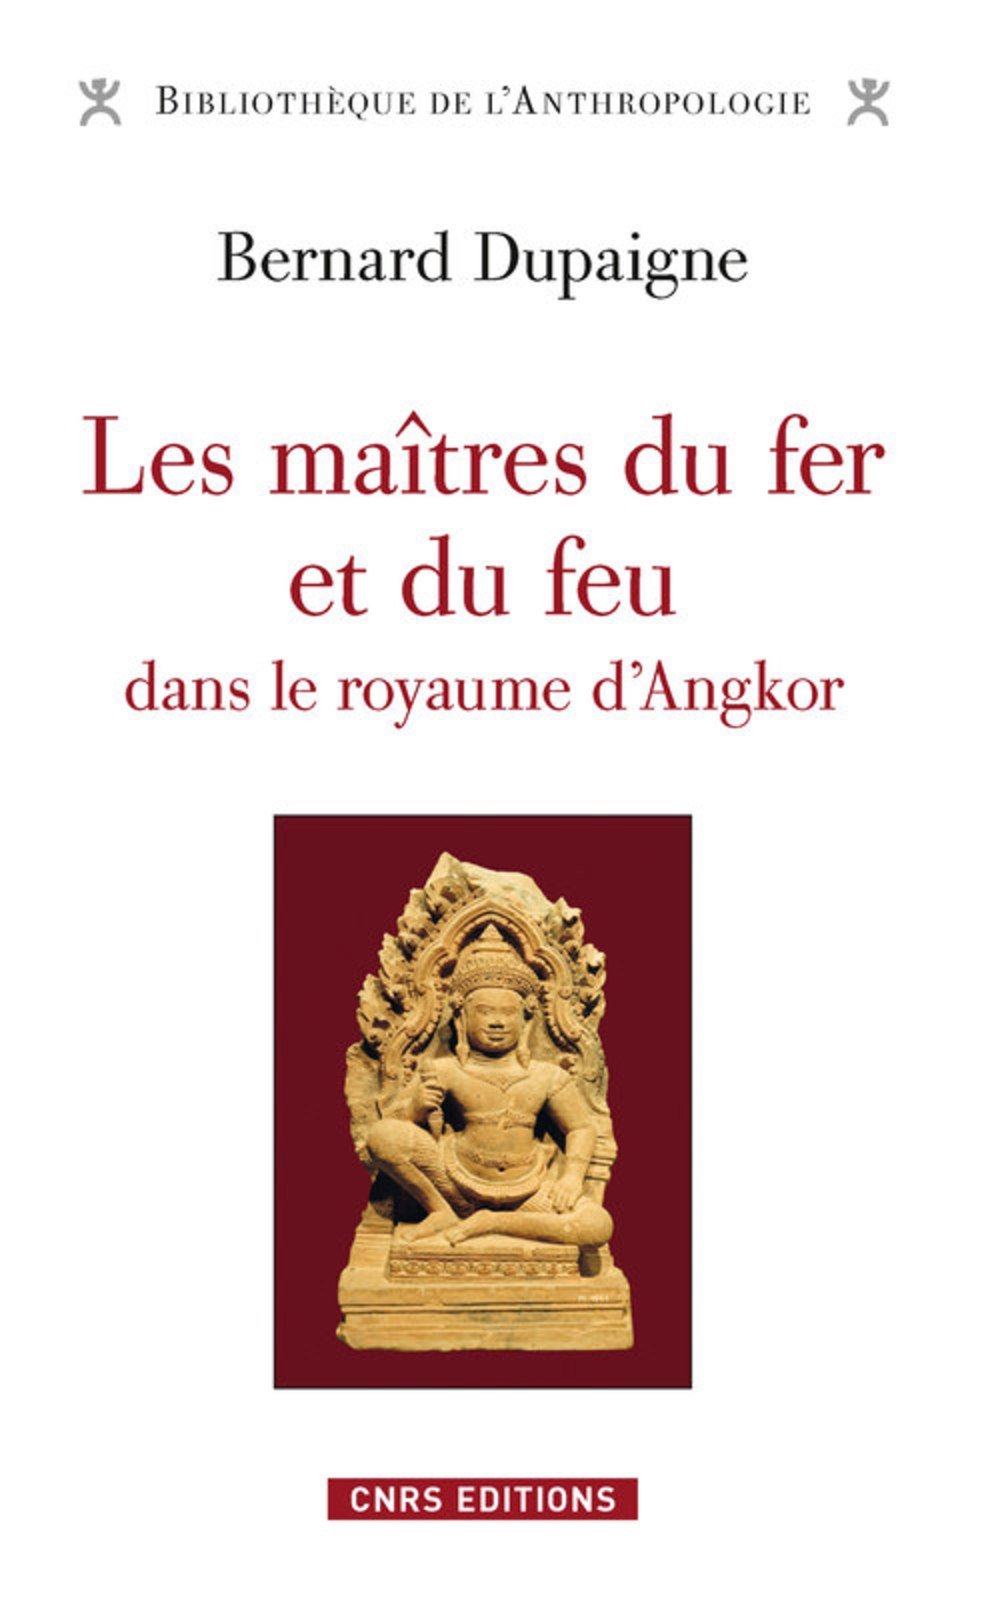 Les maîtres du fer et du feu dans le royaume d'Angkor, 2016, 442 p.